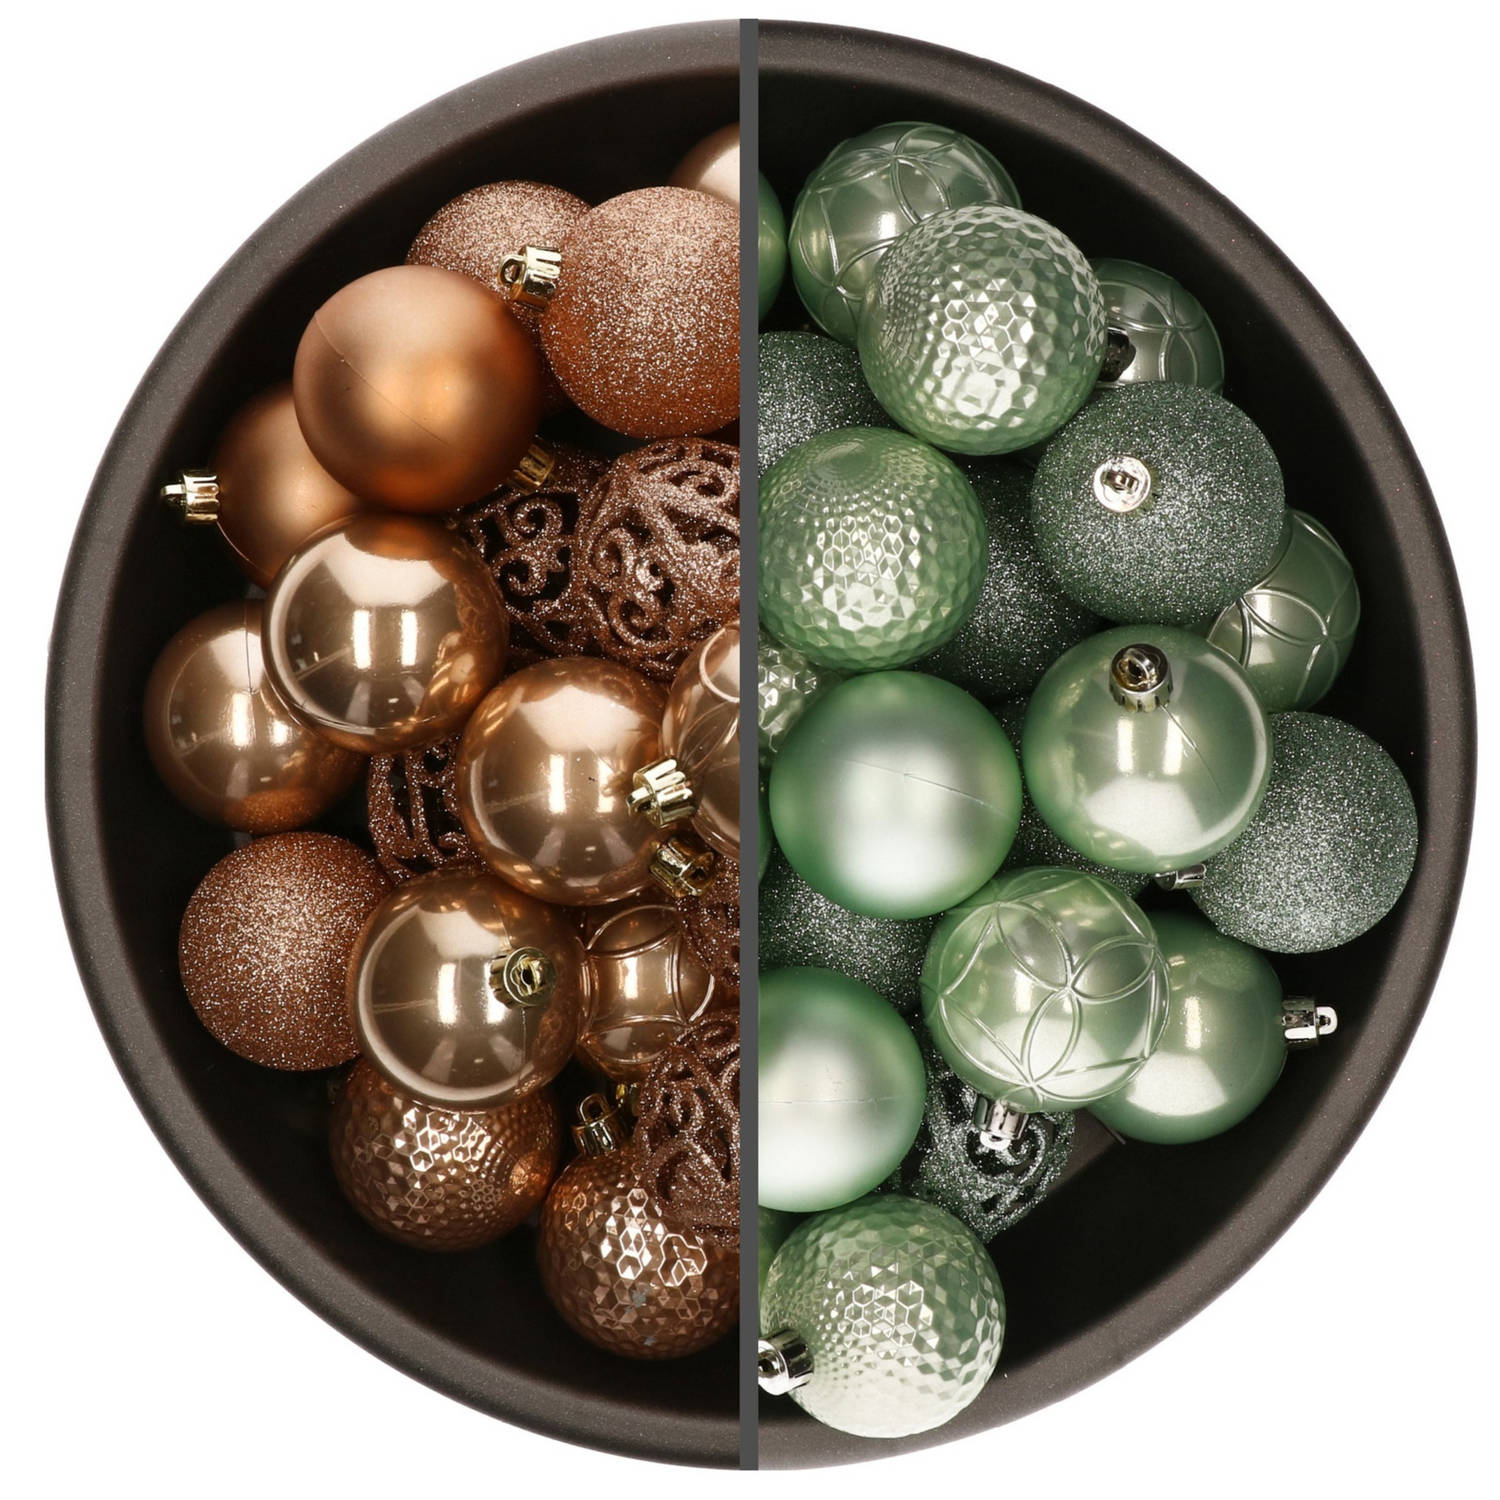 74x stuks kunststof kerstballen mix van mintgroen en camel bruin 6 cm - Kerstbal